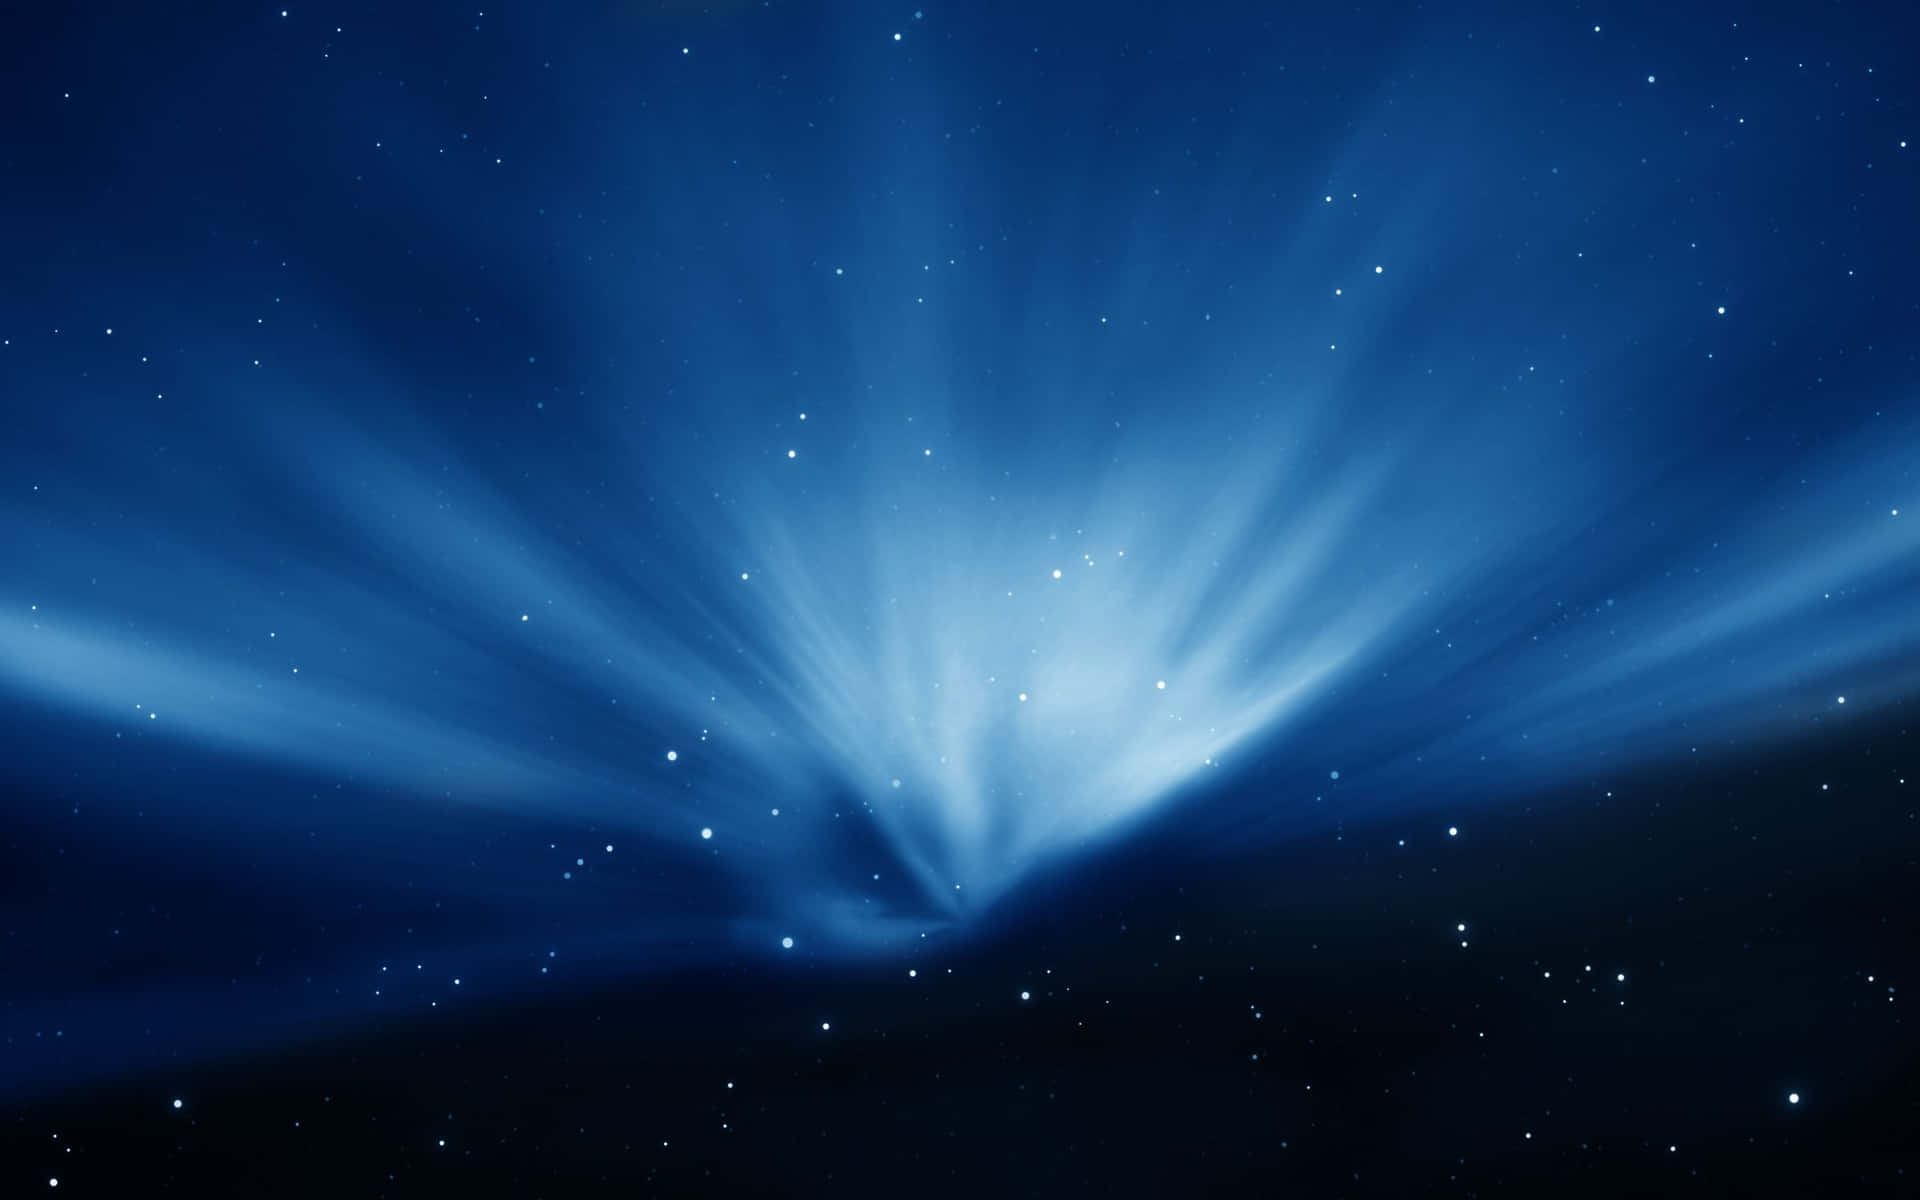 Et smukt mørkeblåt stjerneskud skinner klart i nattehimlen. Wallpaper